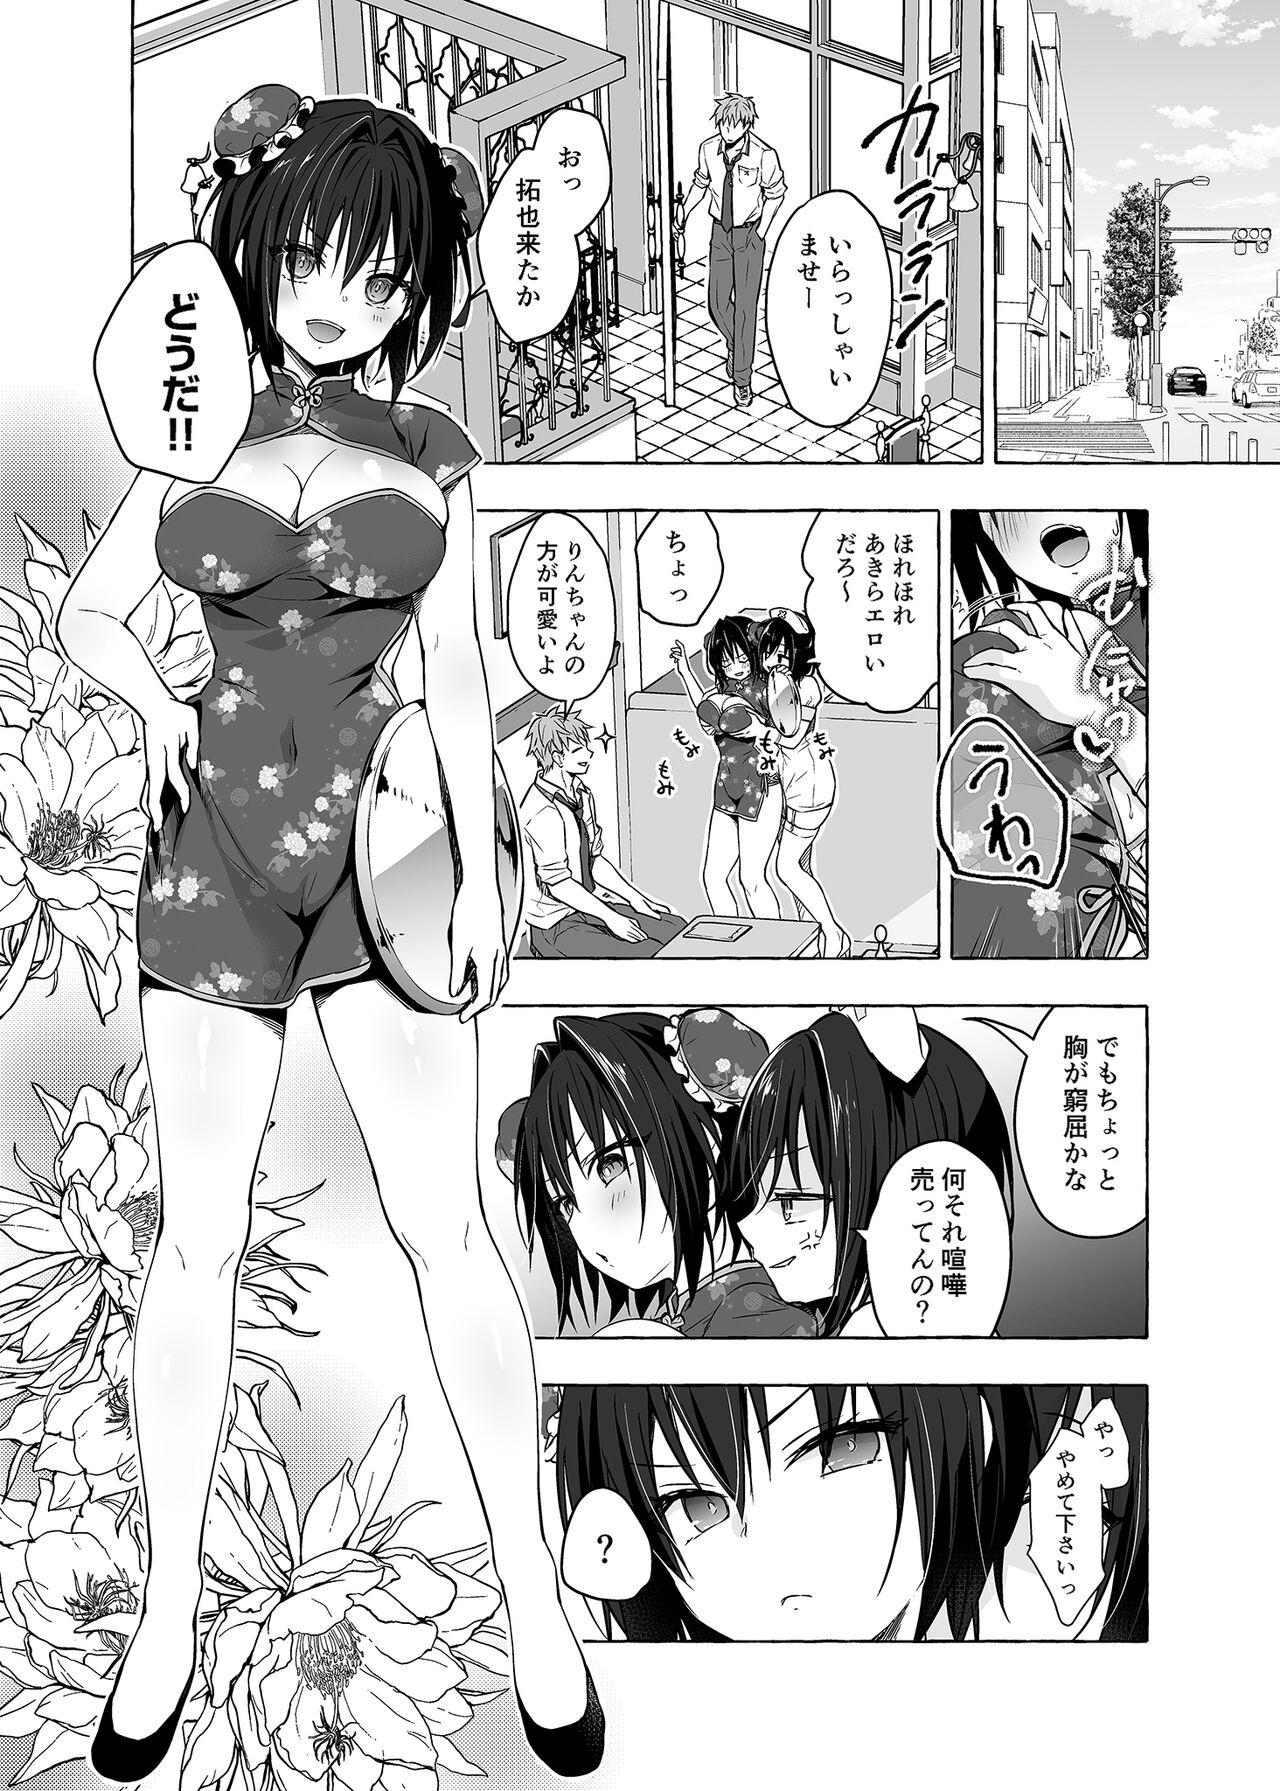 Rola TS Akira-kun no Seiseikatsu 6 - Original 4some - Page 5